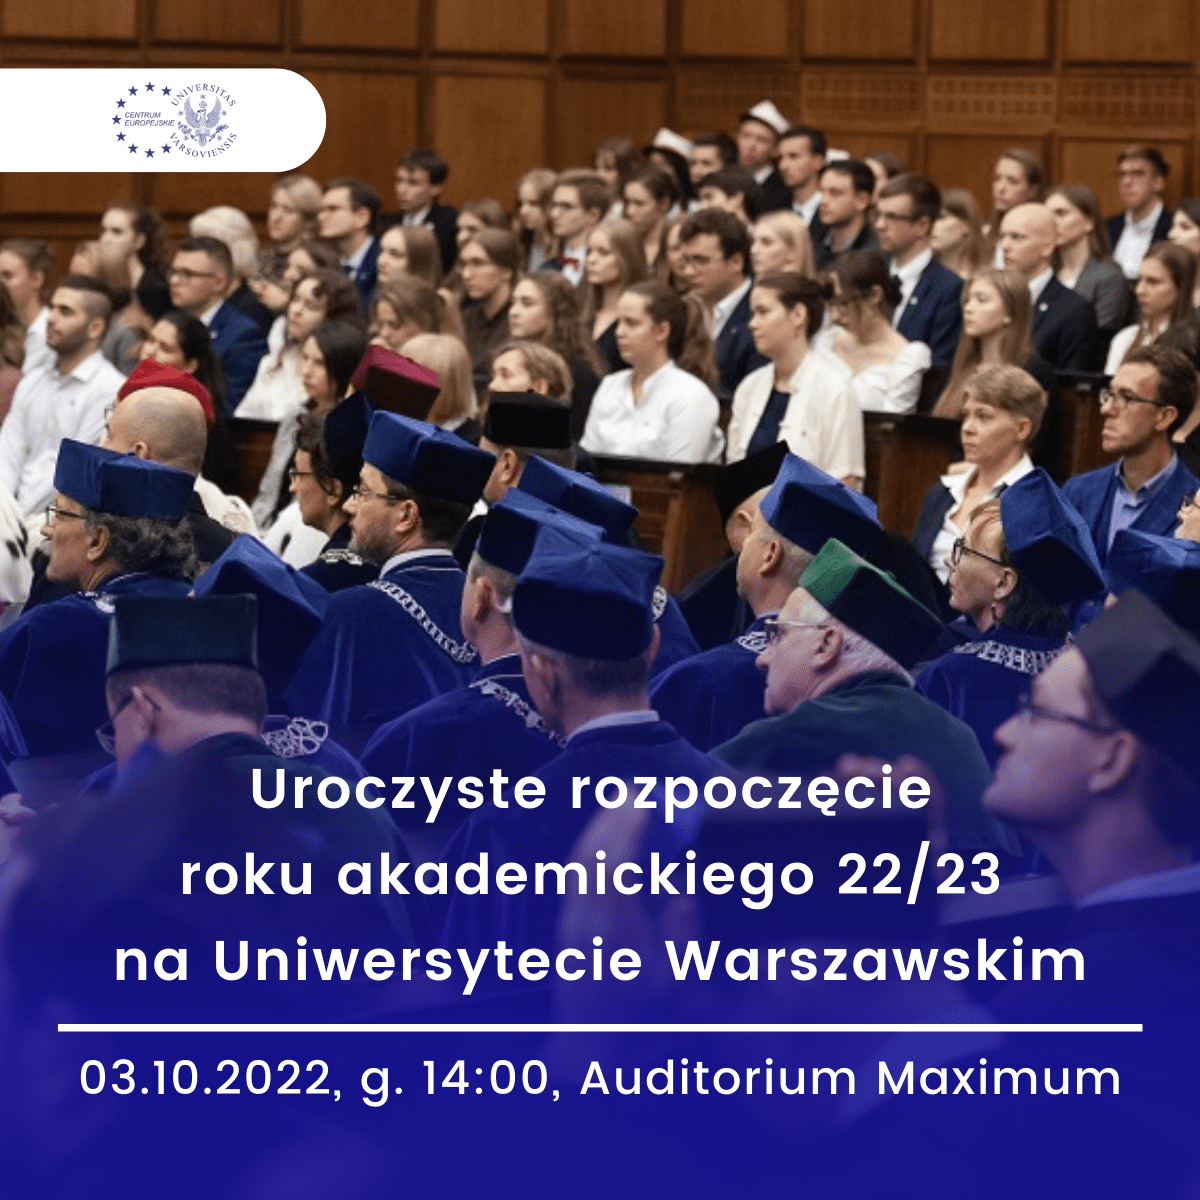 Inauguracja Roku Akademickiego 2022:2023 Na Uniwersytecie Warszawskim